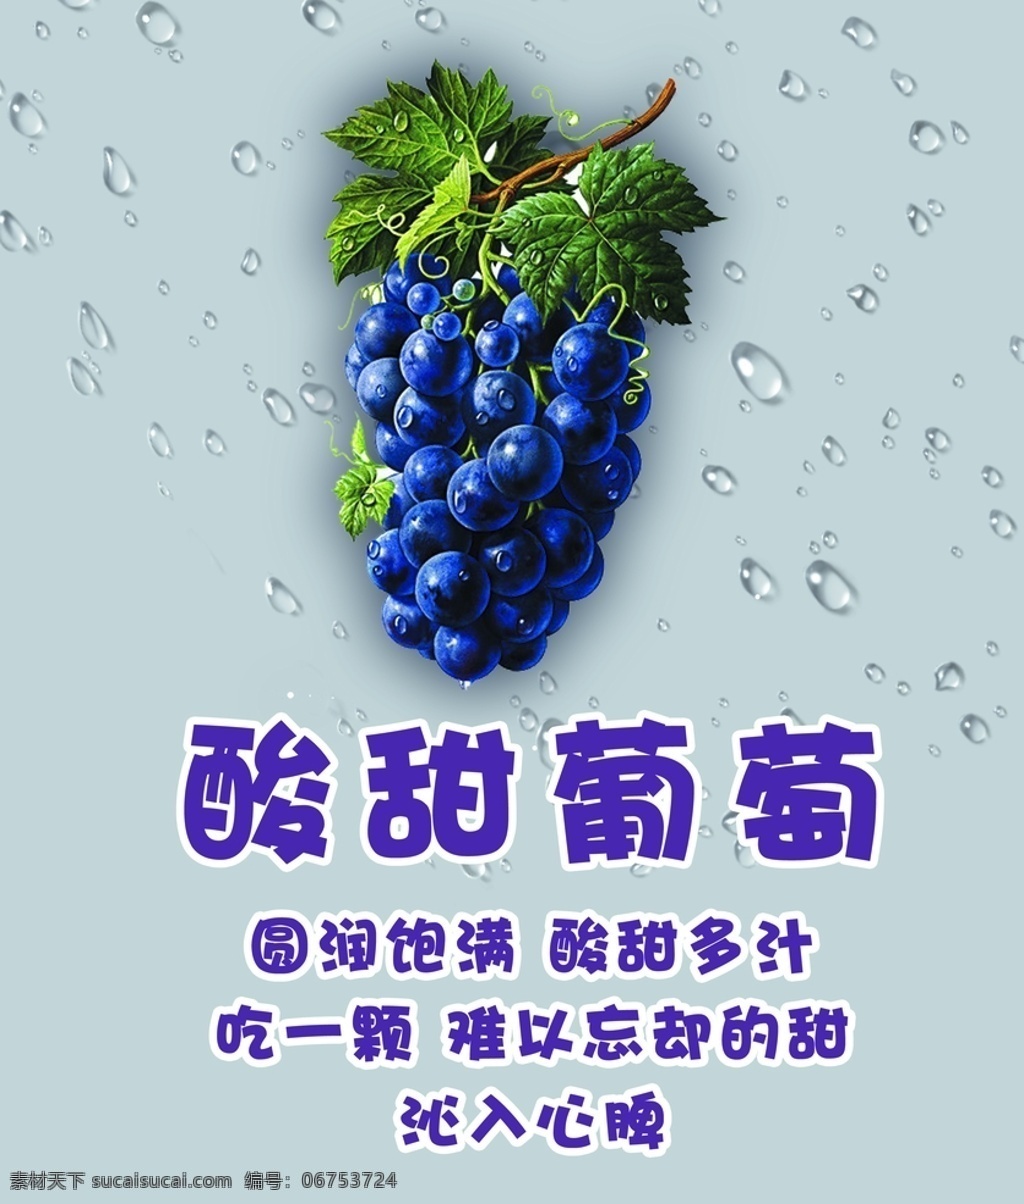 葡萄灯箱 水果 介绍 清新 有机 健康 灯箱 系列 葡萄 分层